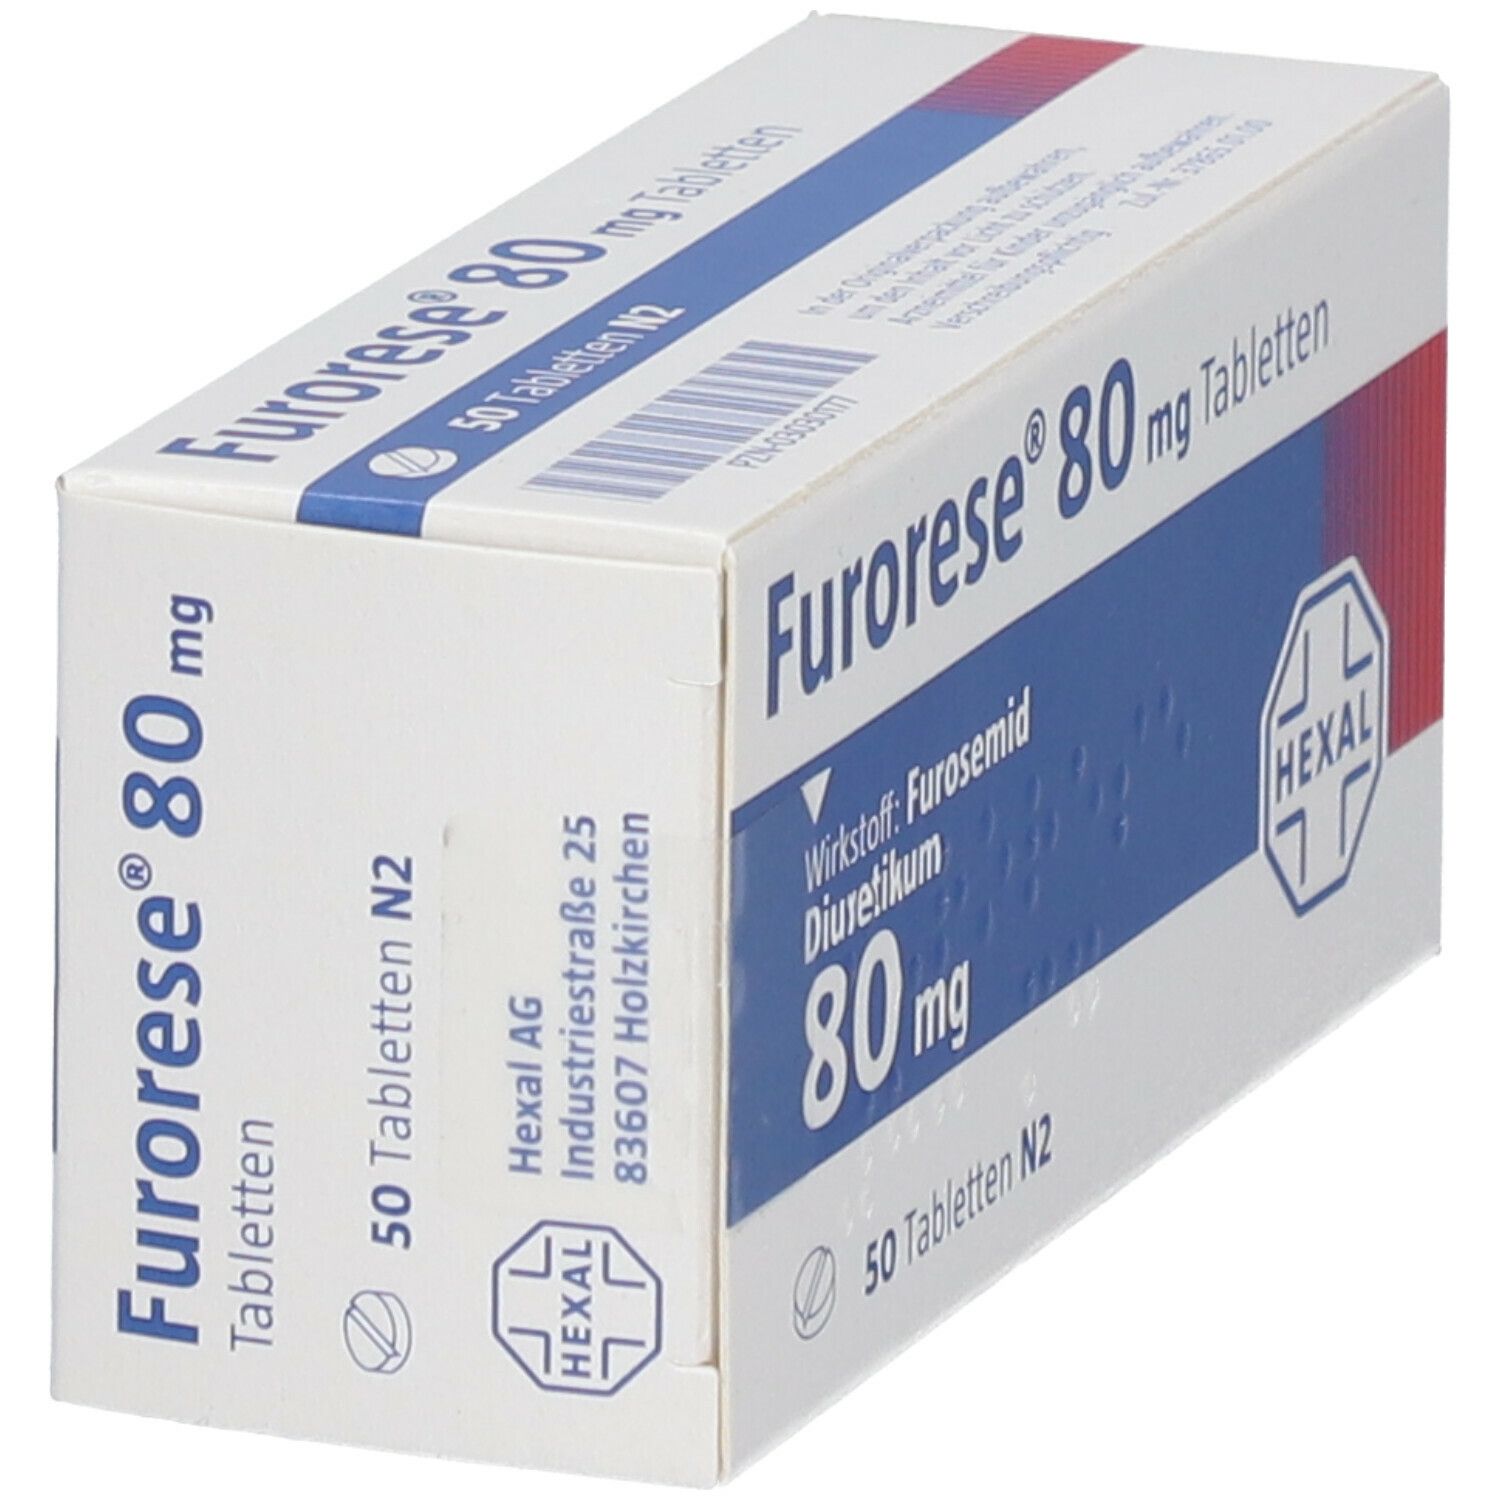 Furorese® 80 mg